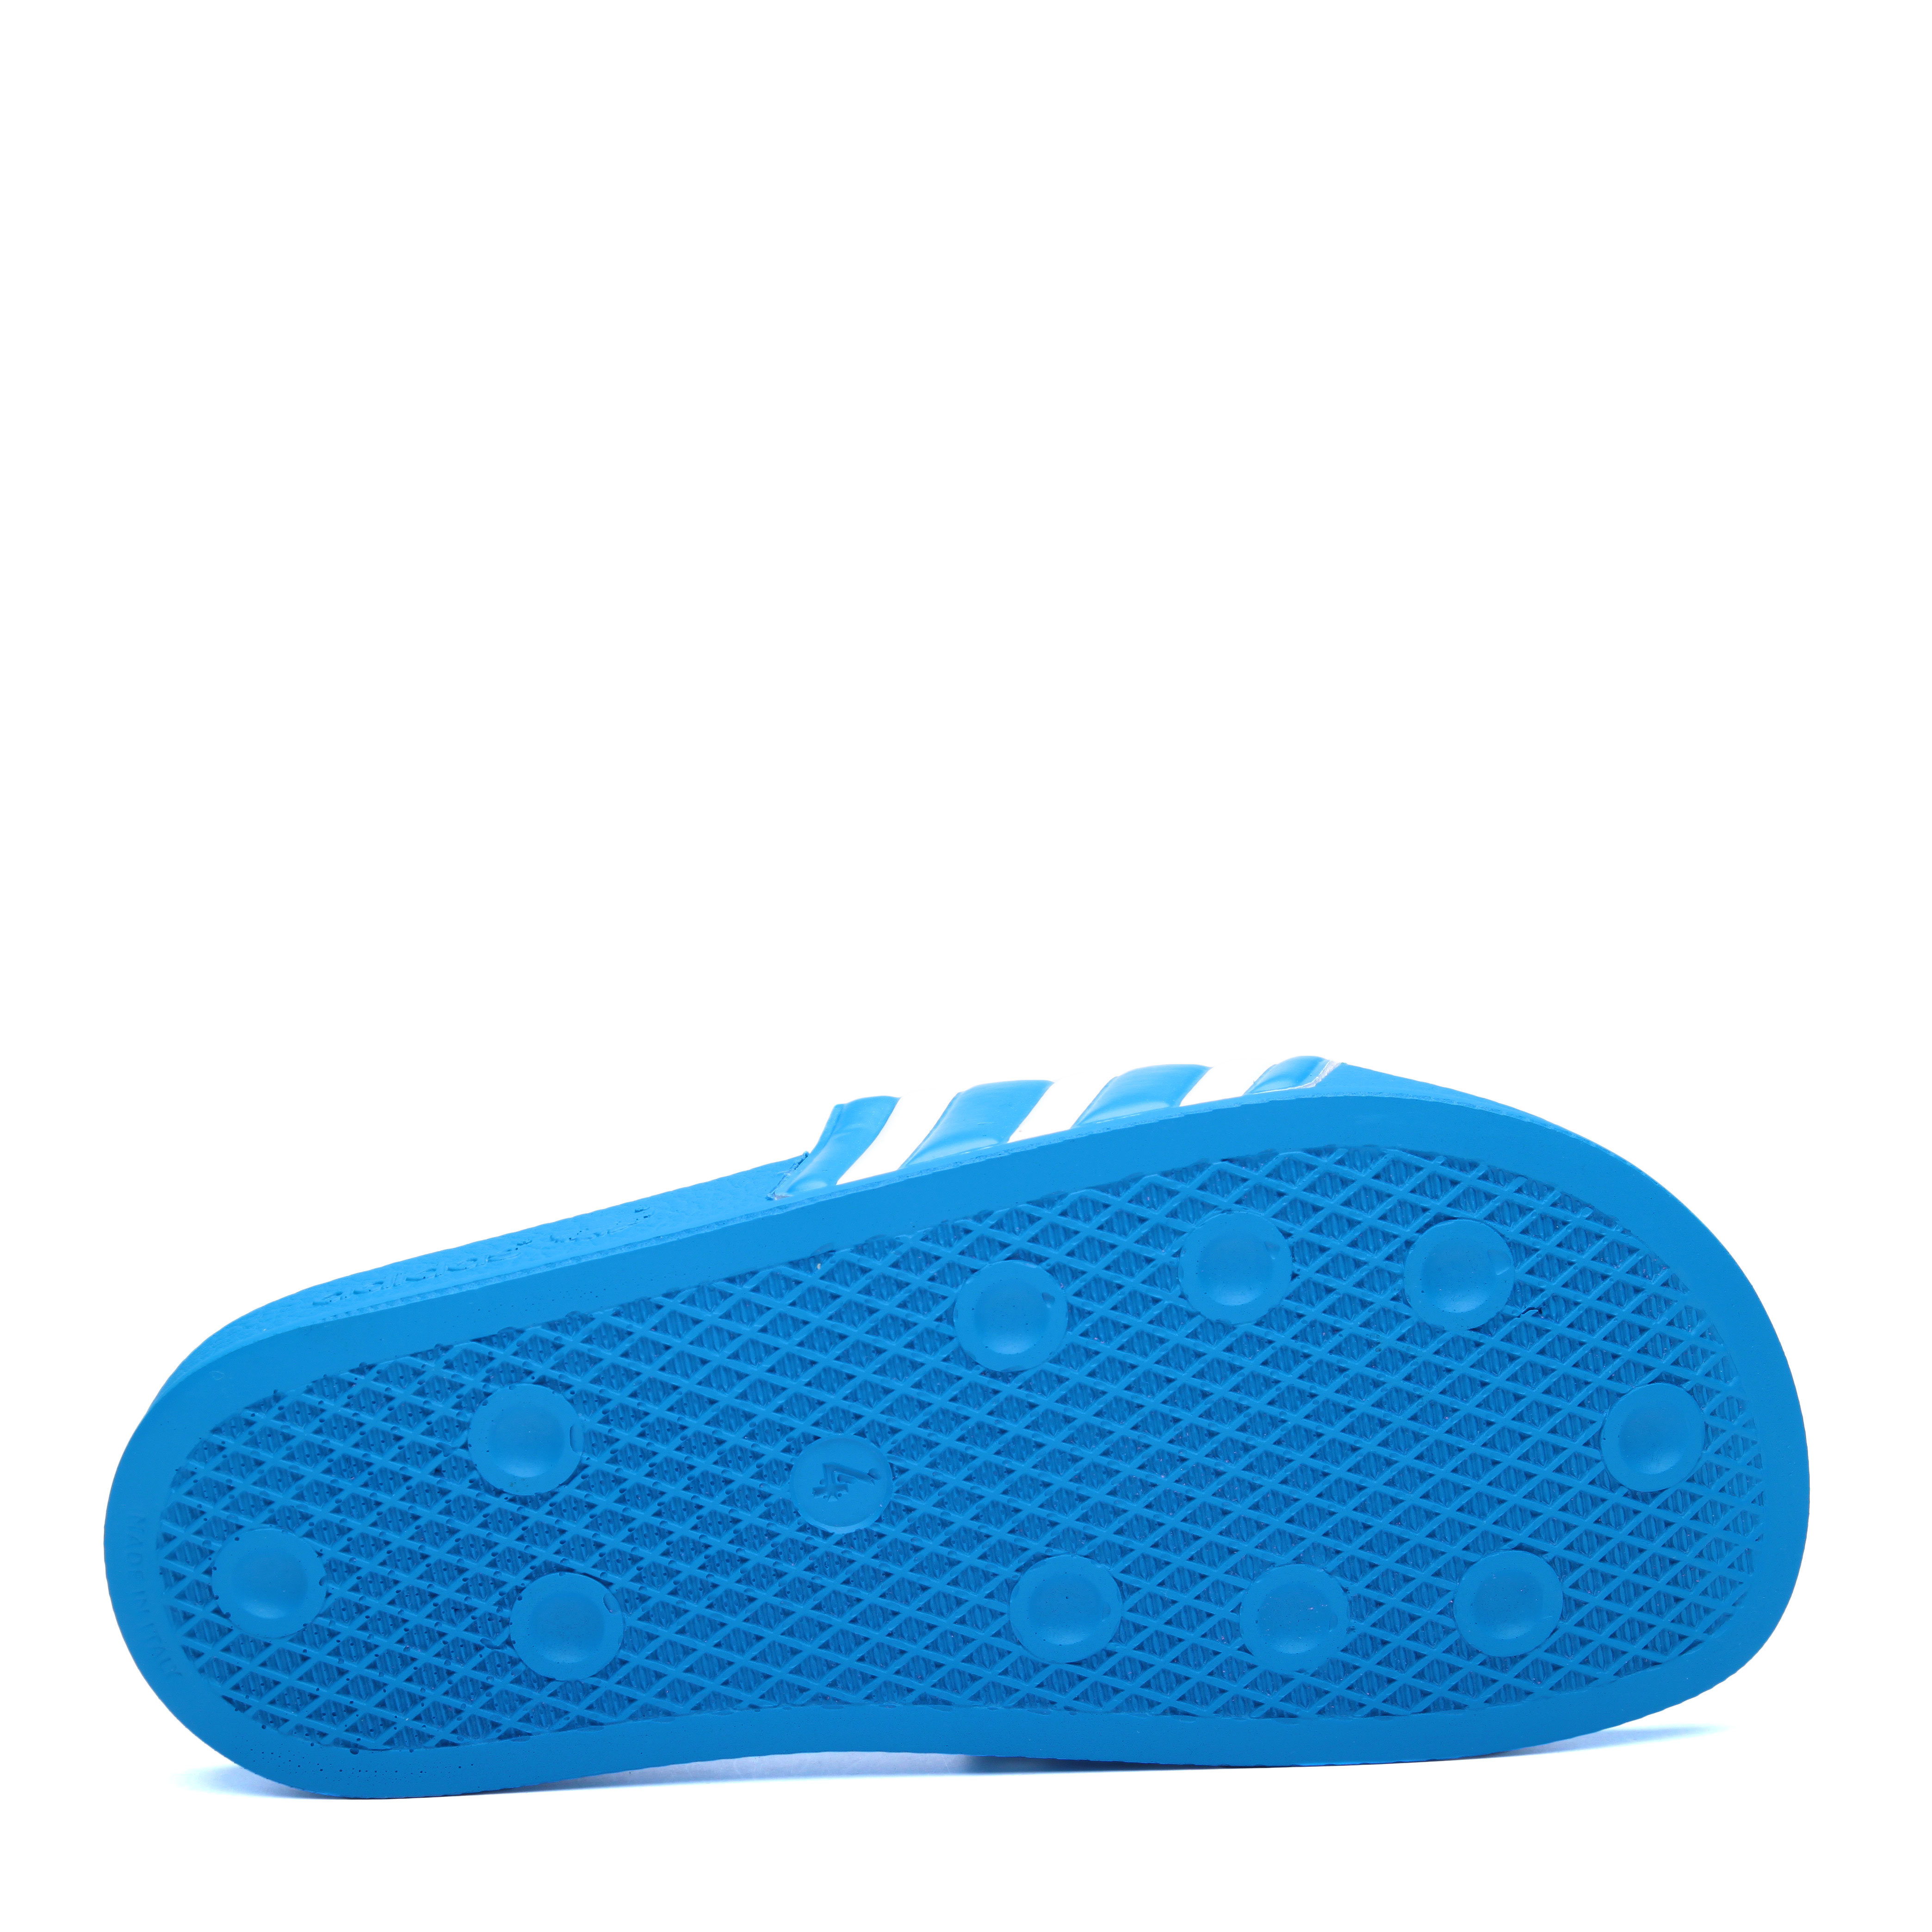  голубые сланцы adidas Adilette Nigo S75558 - цена, описание, фото 4